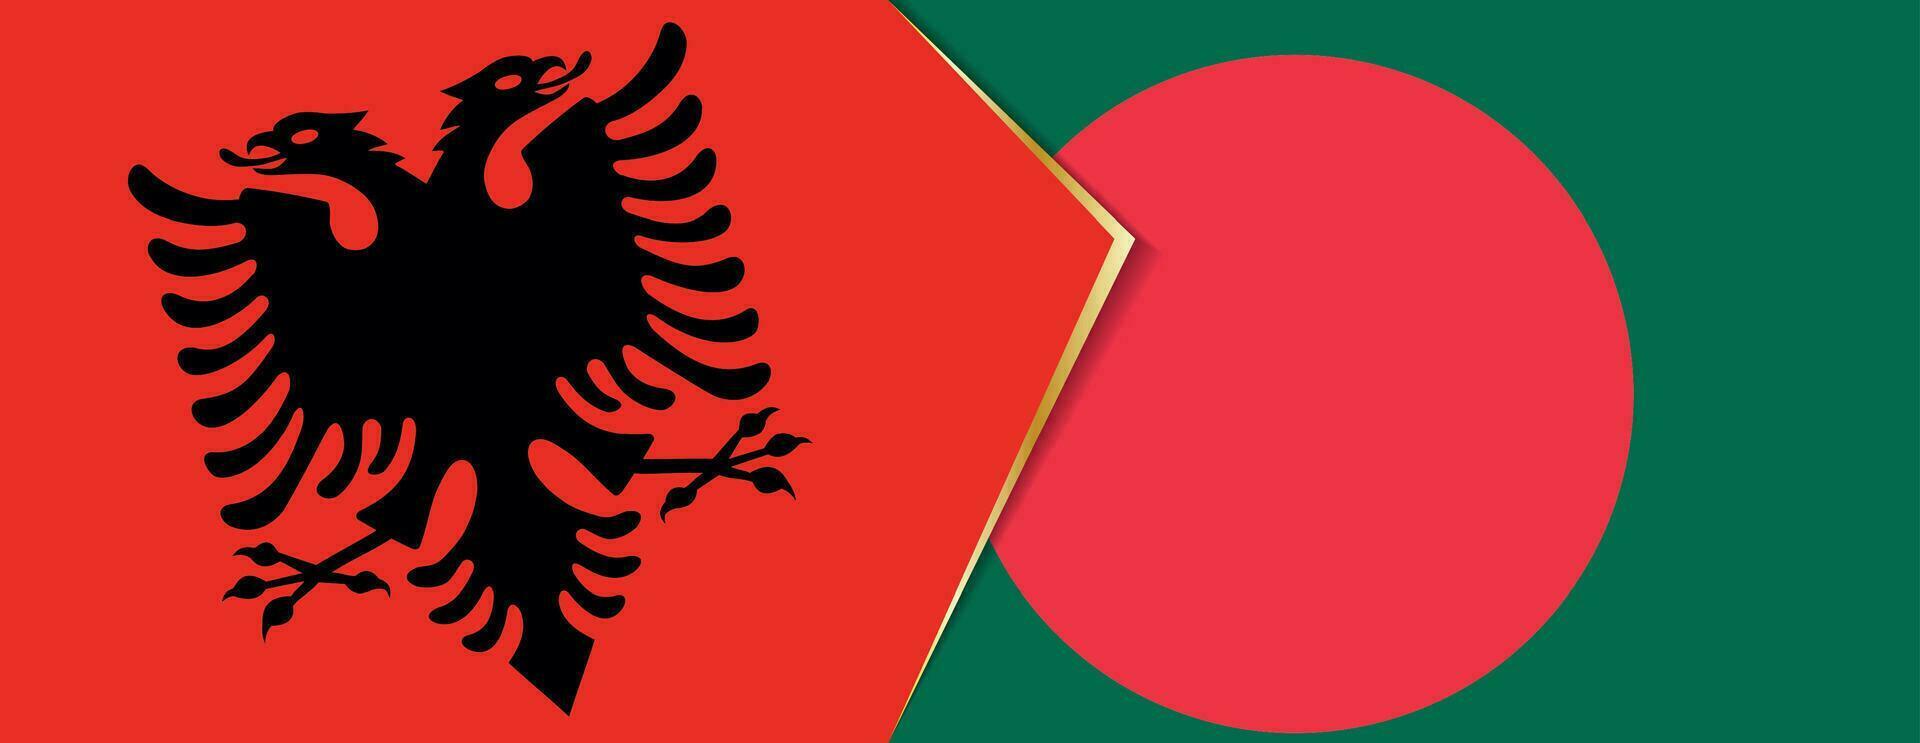 Albânia e Bangladesh bandeiras, dois vetor bandeiras.